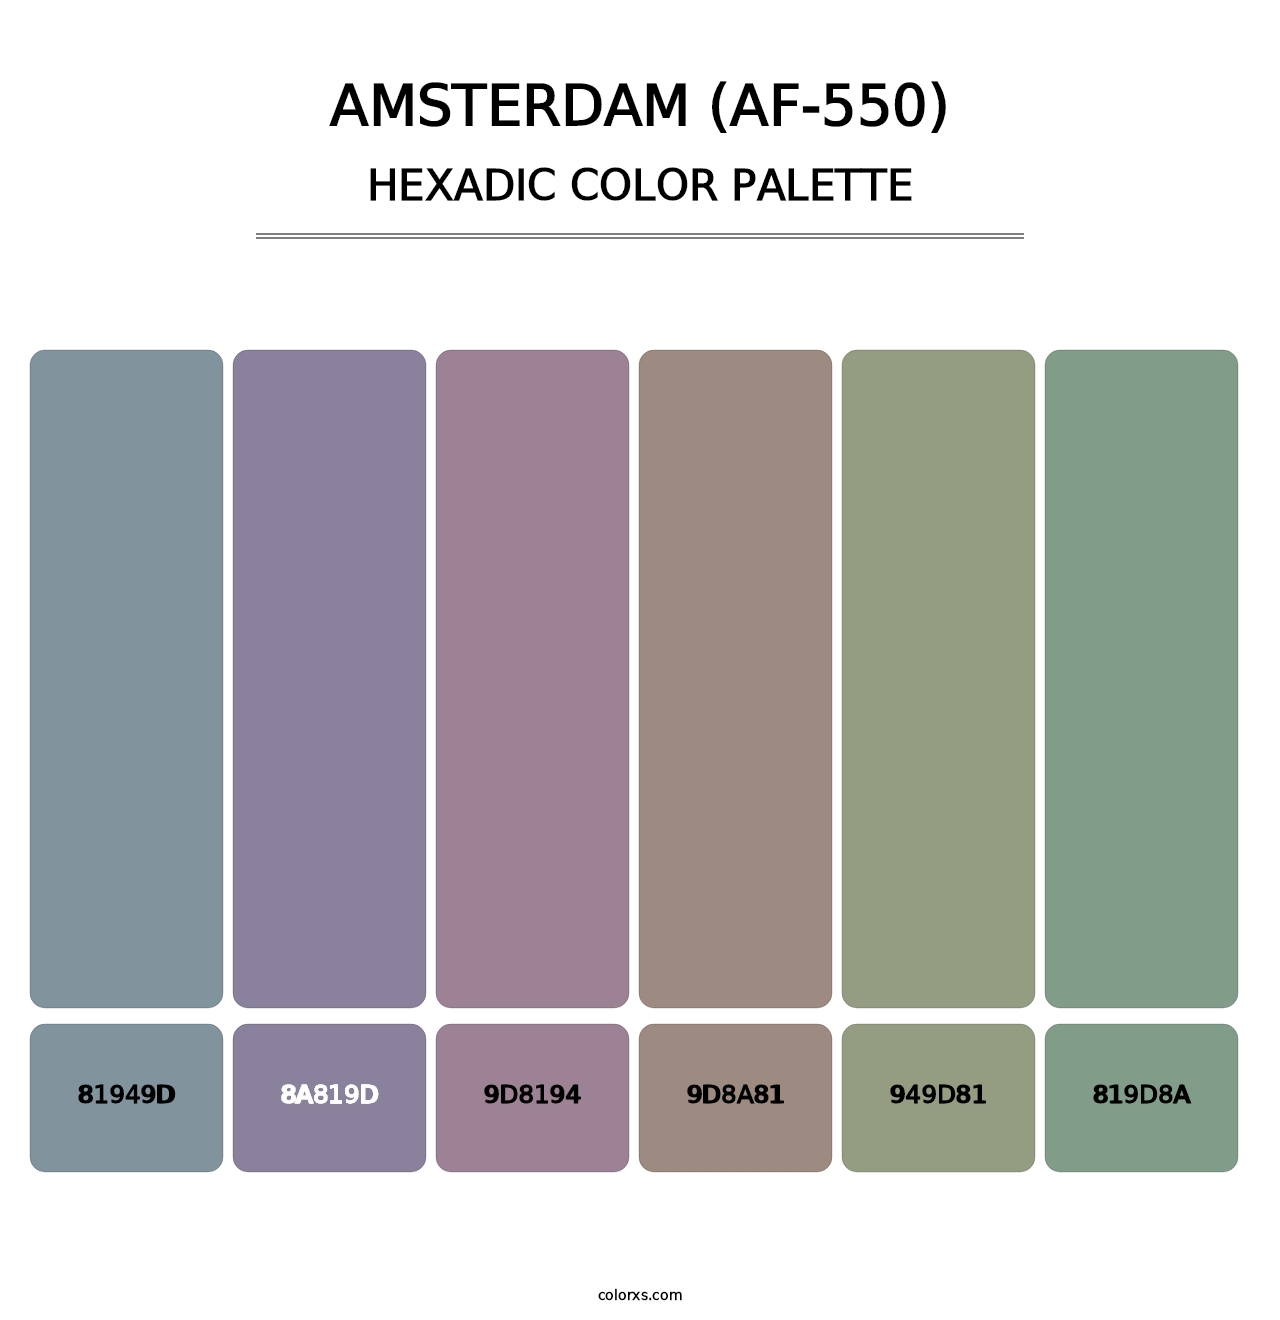 Amsterdam (AF-550) - Hexadic Color Palette